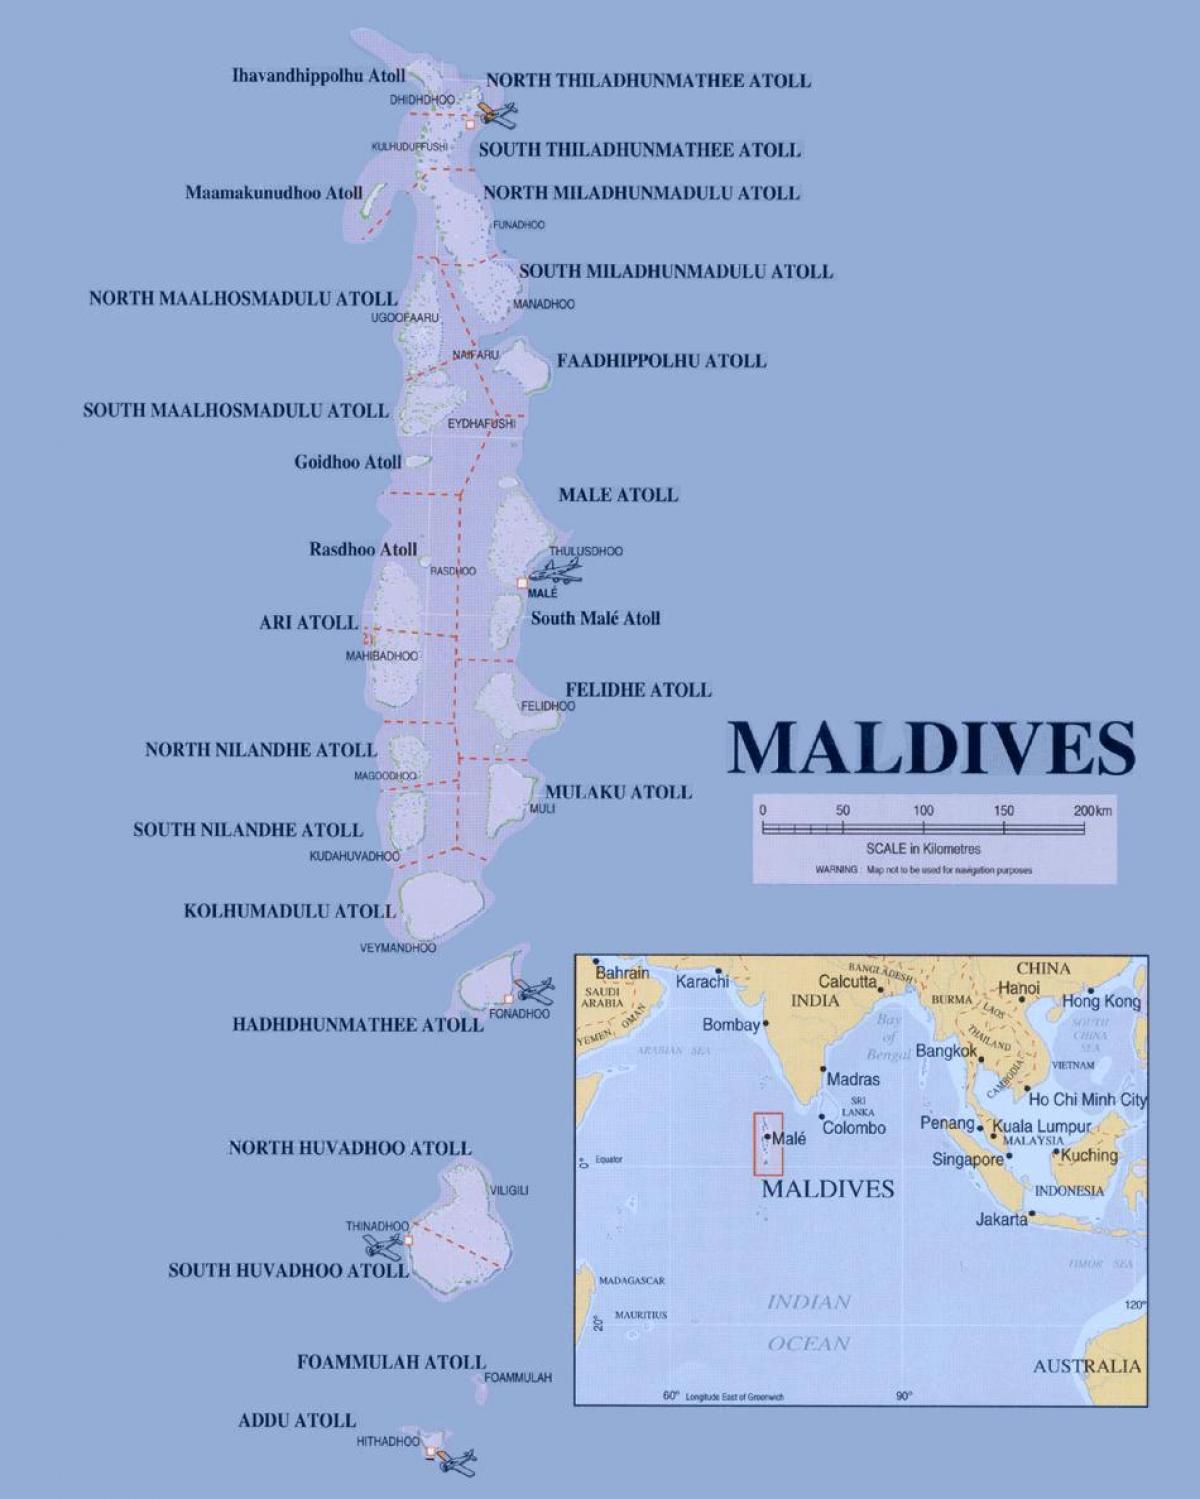 χάρτης που δείχνει μαλδίβες